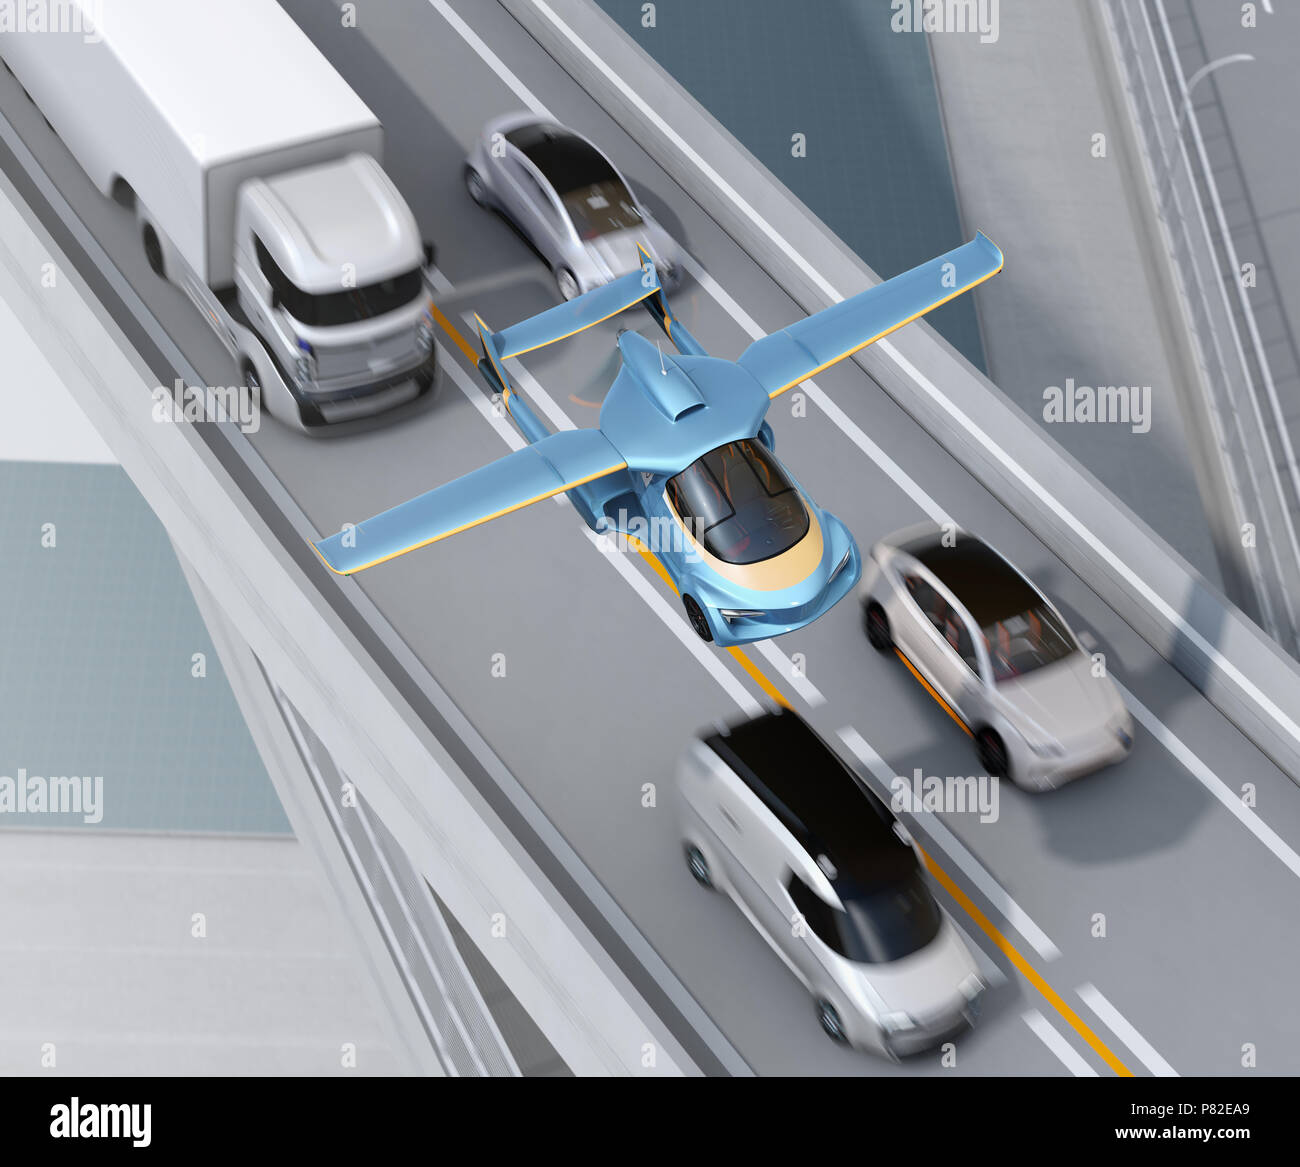 Voiture volante futuriste volant au-dessus de l'autoroute. Transport rapide sans embouteillage concept. Le rendu 3D image. Banque D'Images